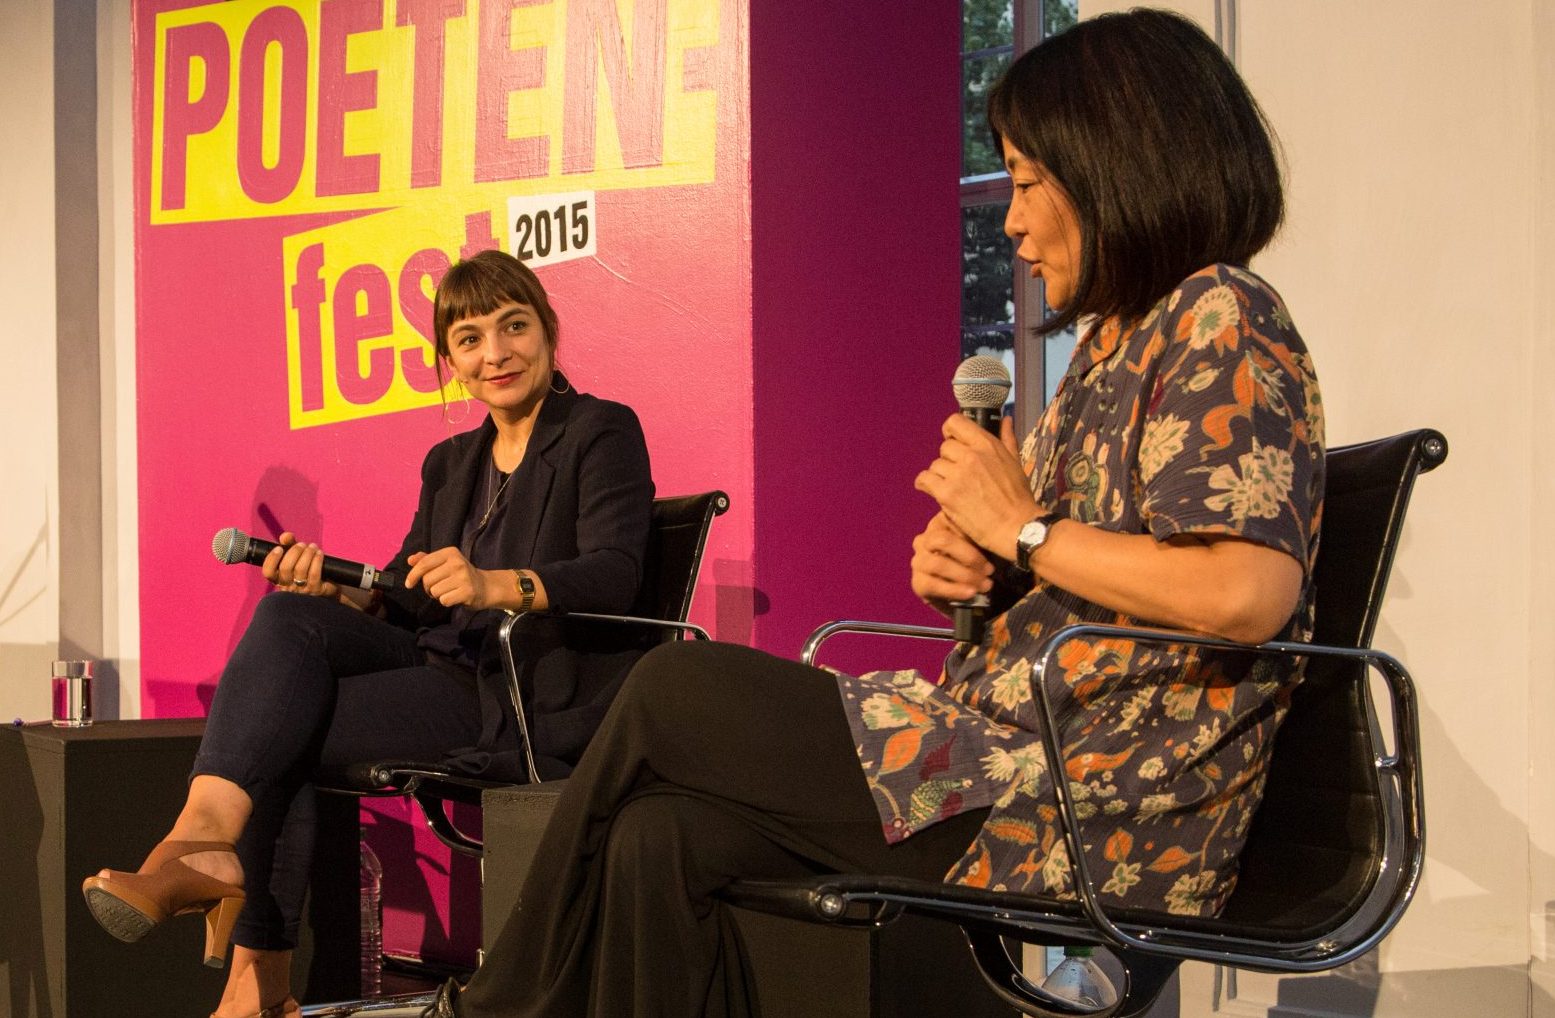 Uljana Wolf und Yoko Tawada auf dem Podium beim Poetenfest 2015